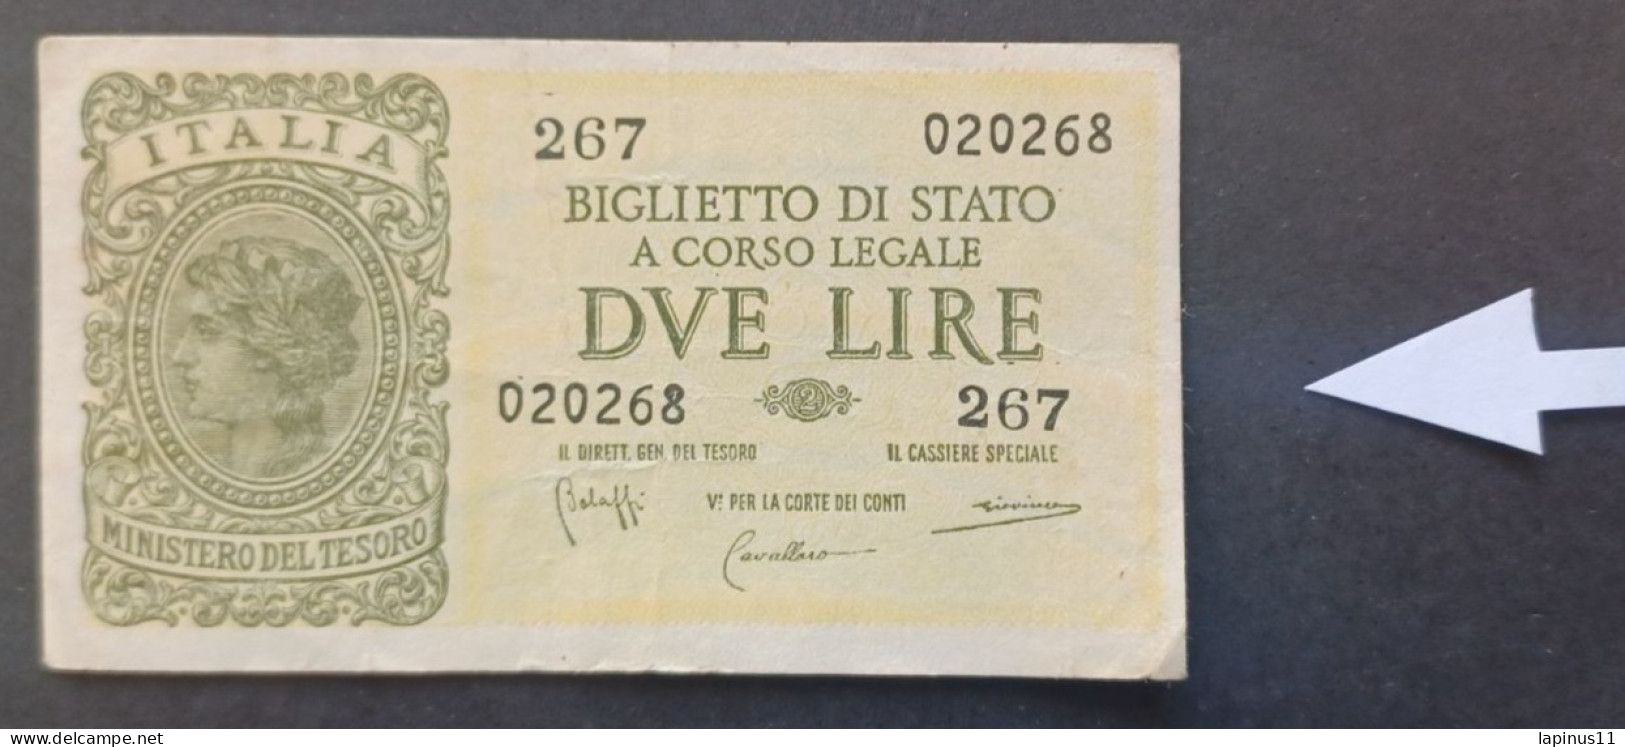 BANKNOTE ITALY KINGDOM VITTORIO EMANUELE 2 LIRE 1944 BOLAFFI GIOVINCO ERRORE EVANESCIENTE PRINT NOT CIRCULATED - Italia – 2 Lire